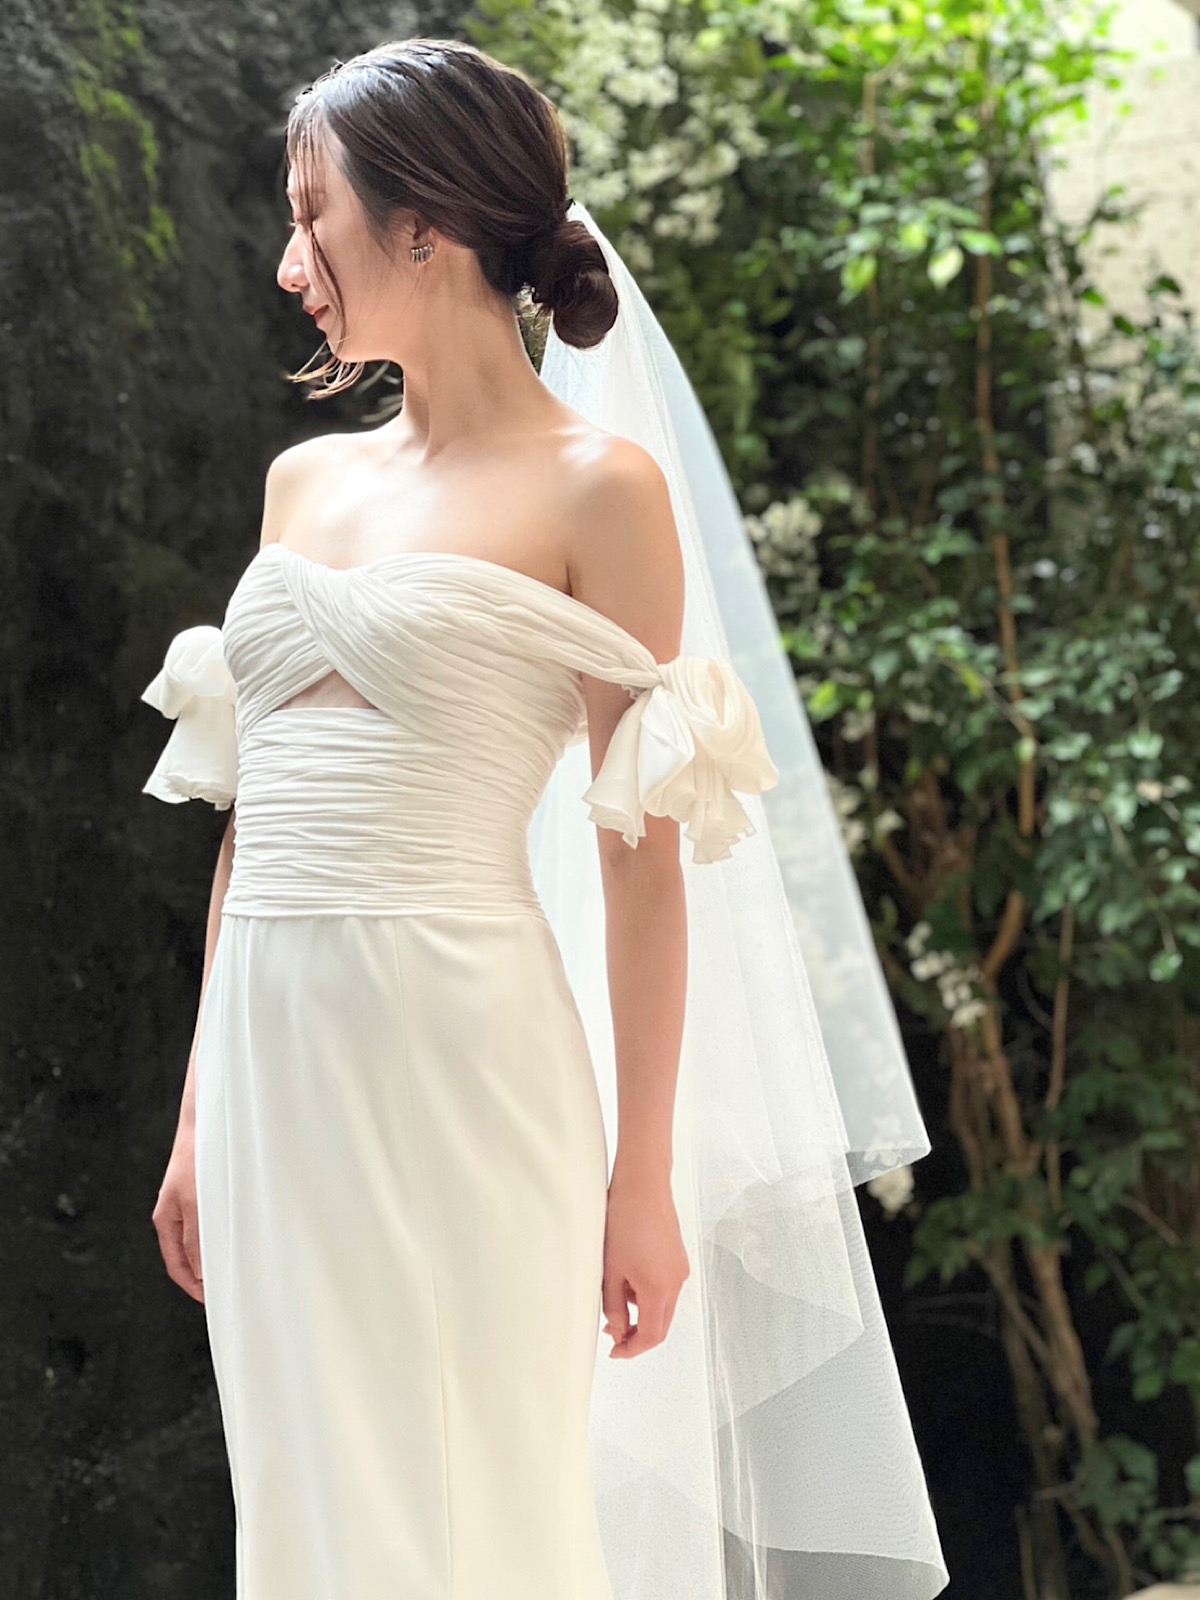 名古屋で人気の結婚式会場のザカワブンナゴヤで式を挙げる花嫁へぴったりのザトリートドレッシング名古屋店がおすすめの新作ウェディングドレス